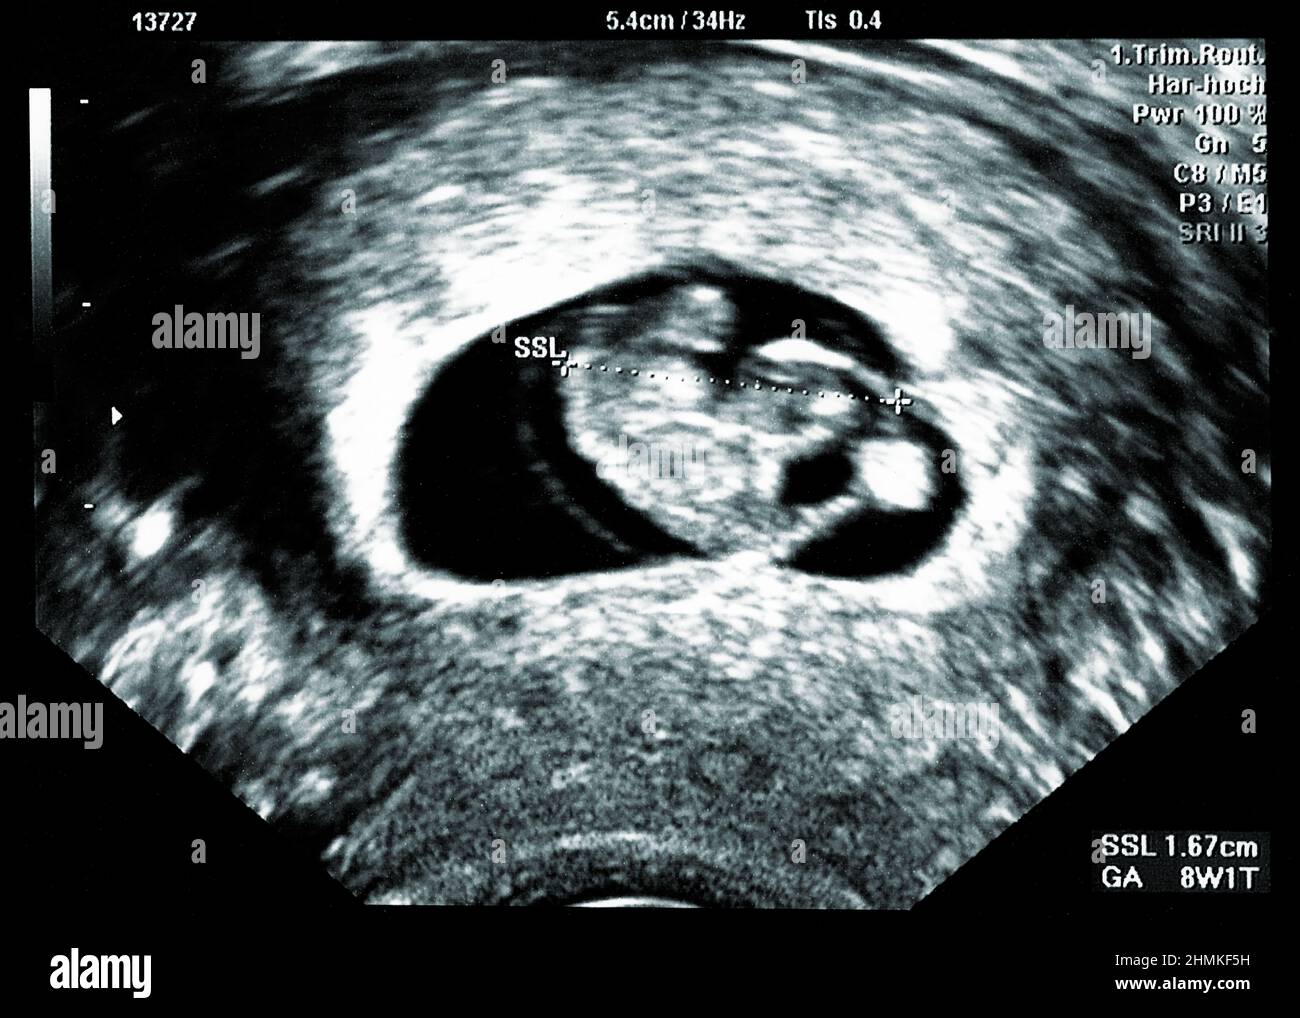 Échographie petit bébé à 8 semaines. 8 semaines d'échographie de grossesse montrent le développement du bébé ou du fœtus et la santé de la grossesse à un hôpital Banque D'Images